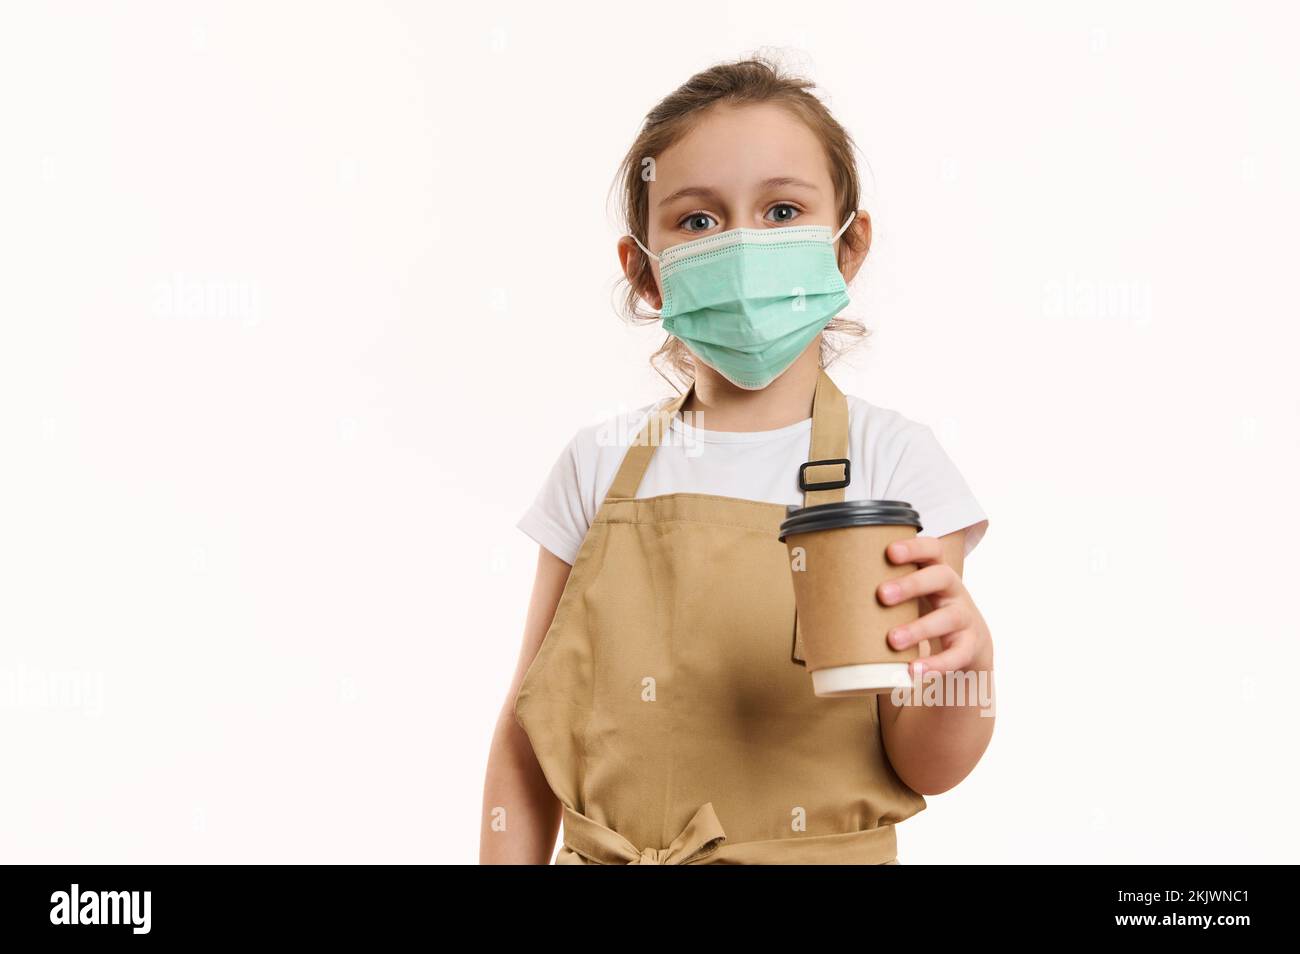 Adorabile bambina in grembiule dello chef e maschera medica protettiva verde, distribuendo una bevanda calda da asporto in tazza di carta Foto Stock